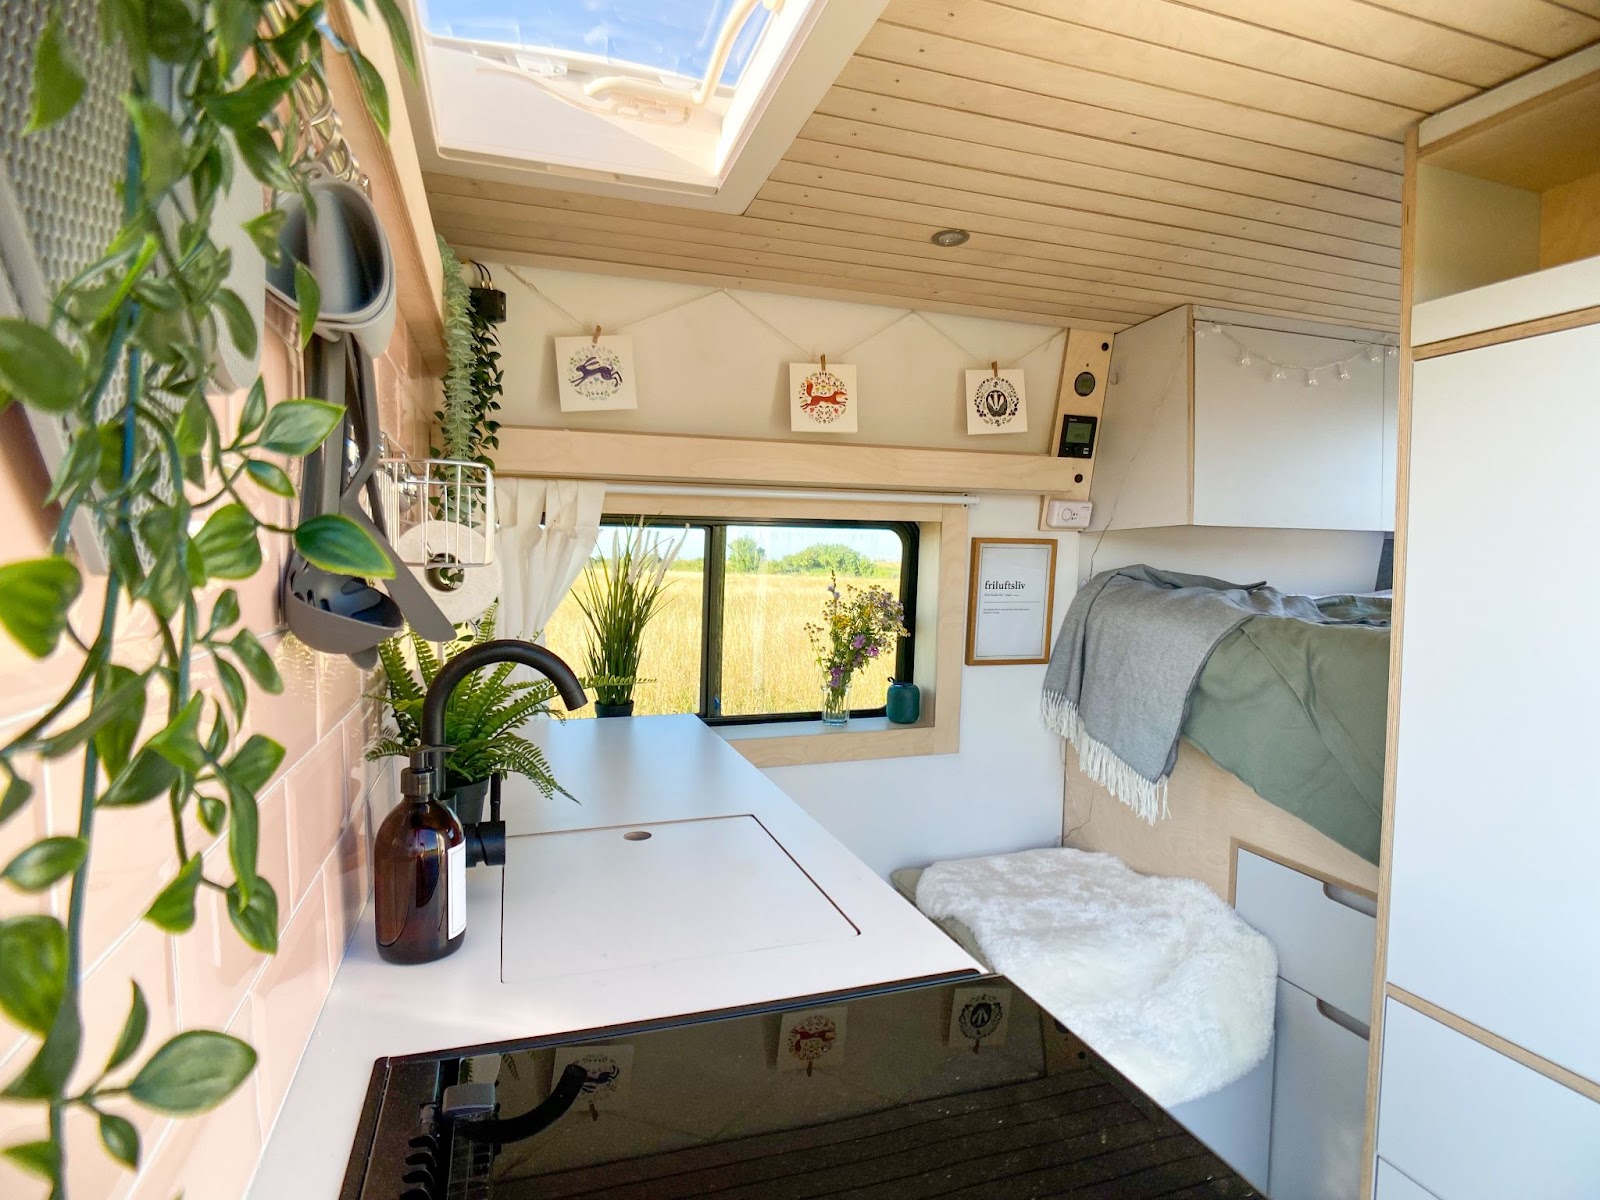 Modern white wooden campervan interior with plants. 